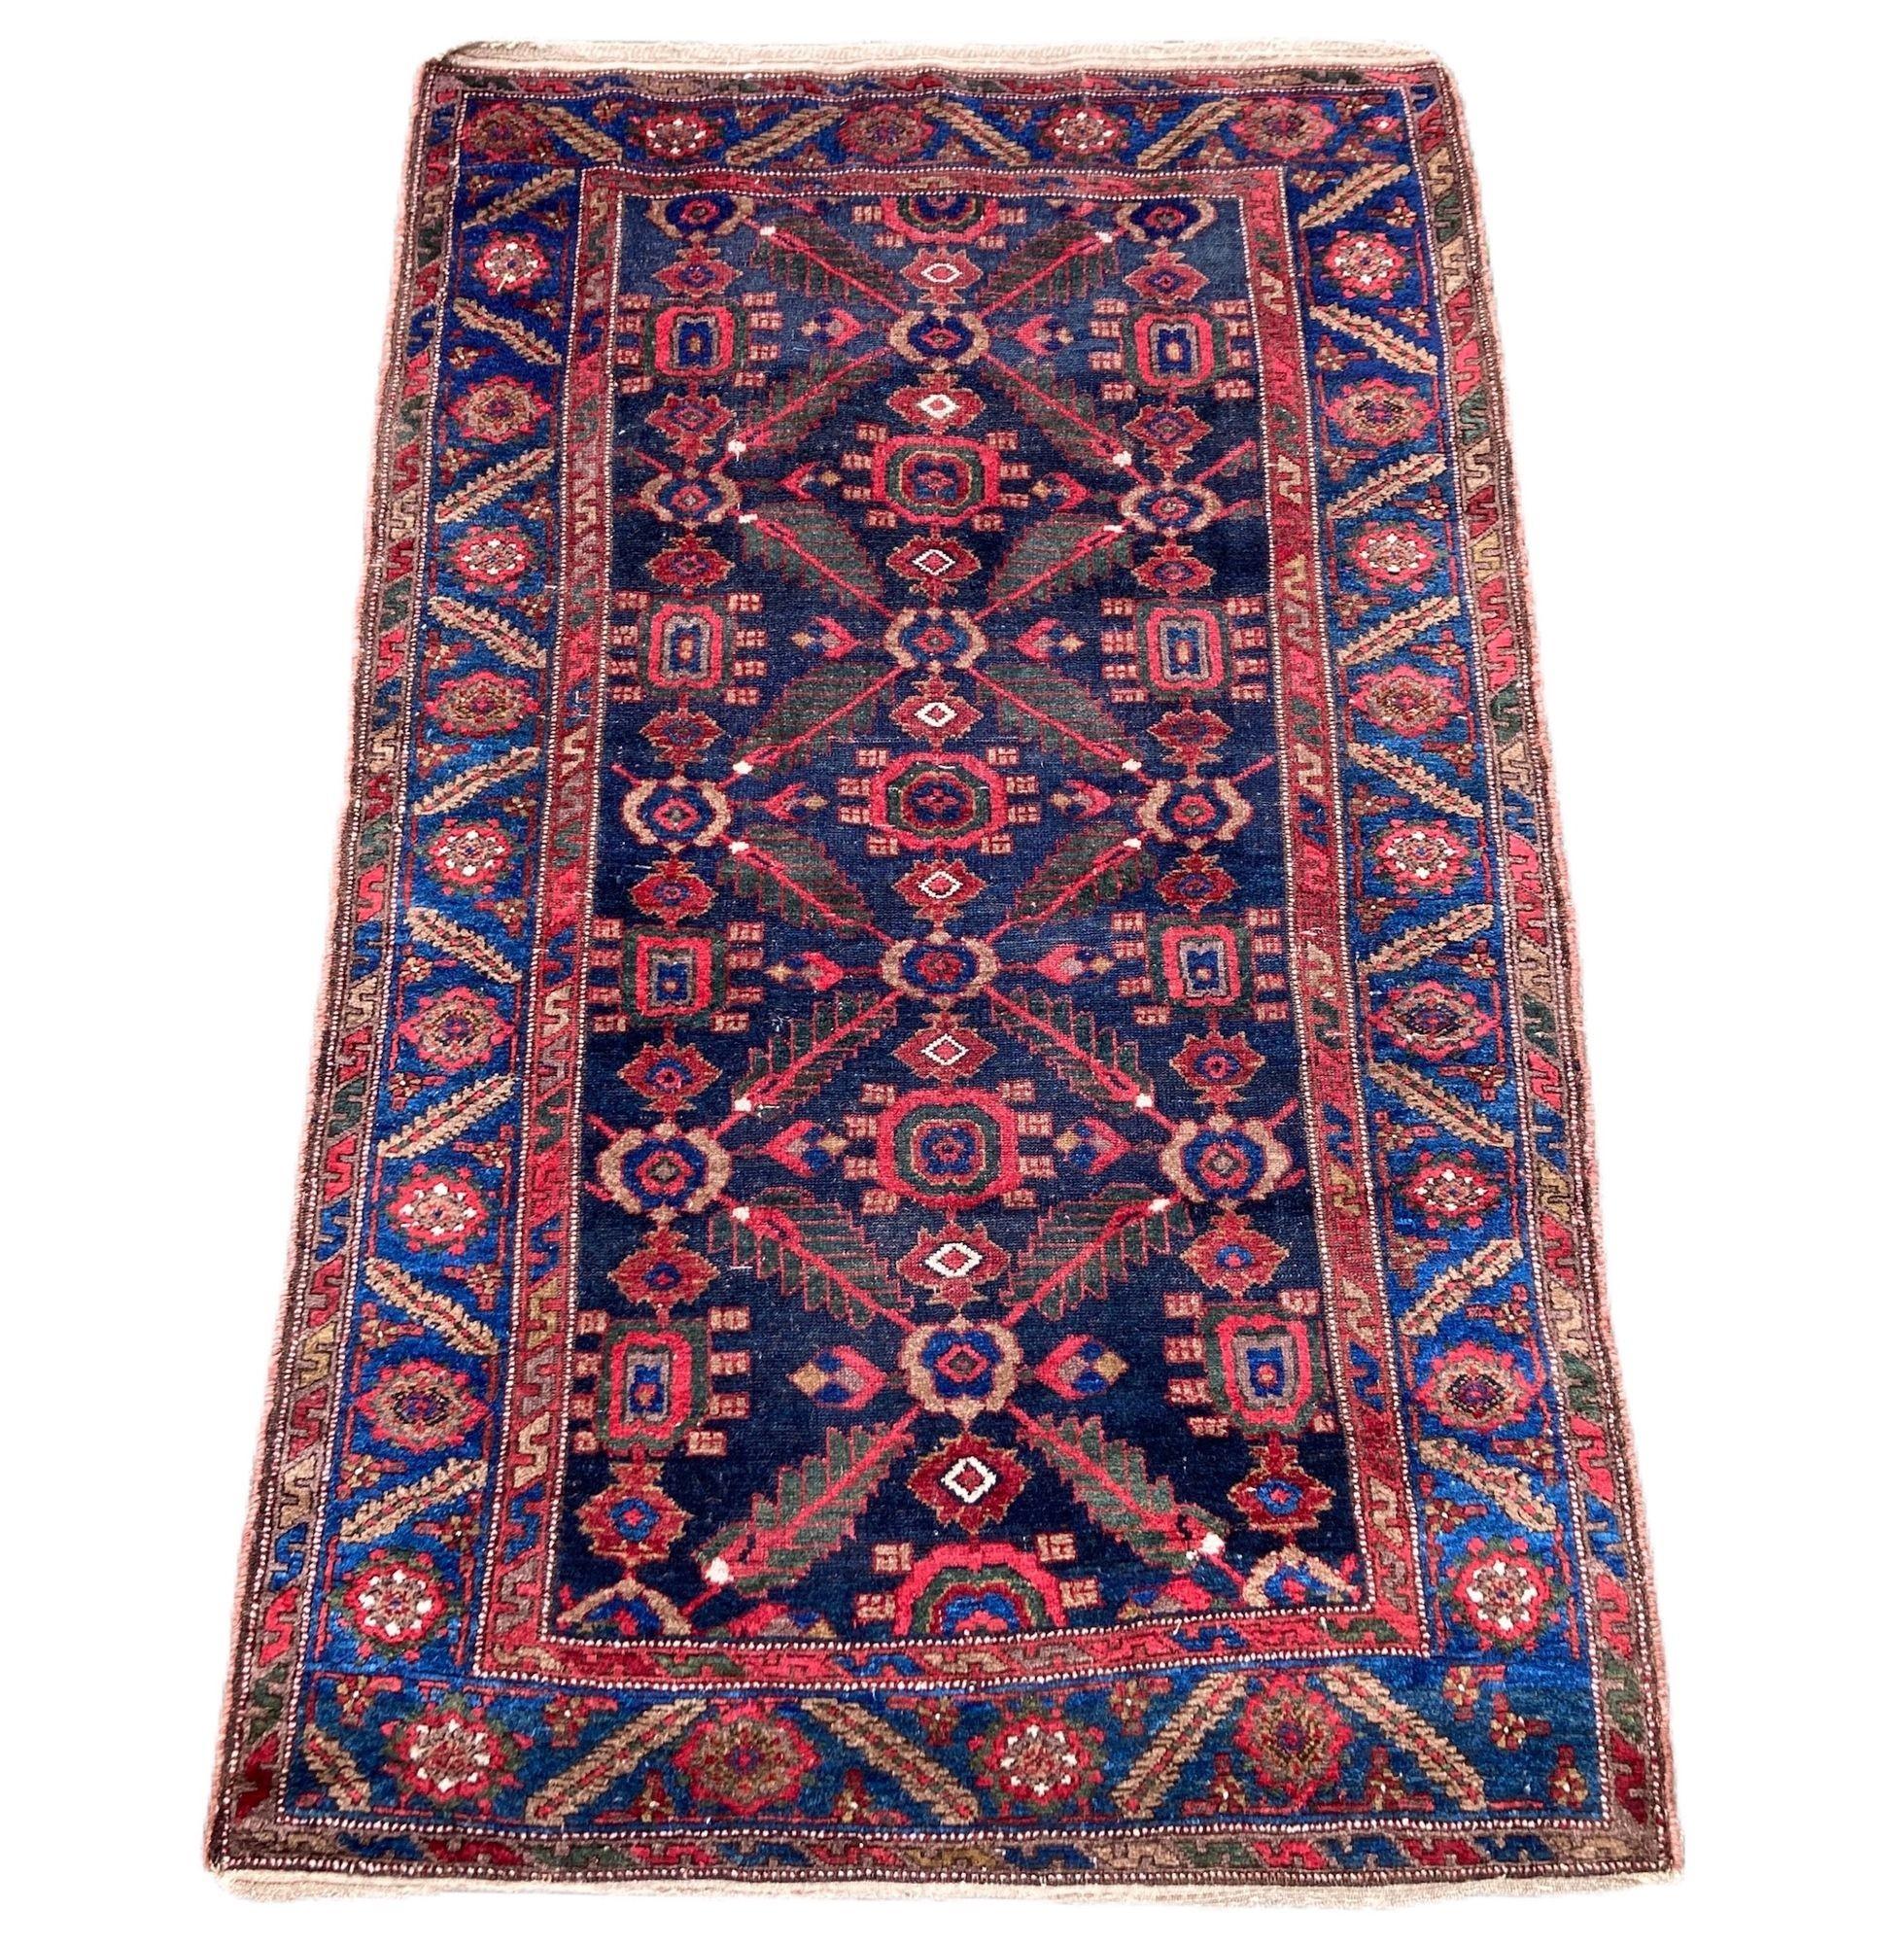 Ein schöner antiker kurdischer Teppich, handgewebt um 1910, mit einem geometrischen Muster aus stilisierten Blumen und Ranken auf einem tiefen indigoblauen Feld. Hervorragende Wollqualität und tolle Sekundärfarben.
Größe: 2.06m x 1.31m (6ft in x 4ft